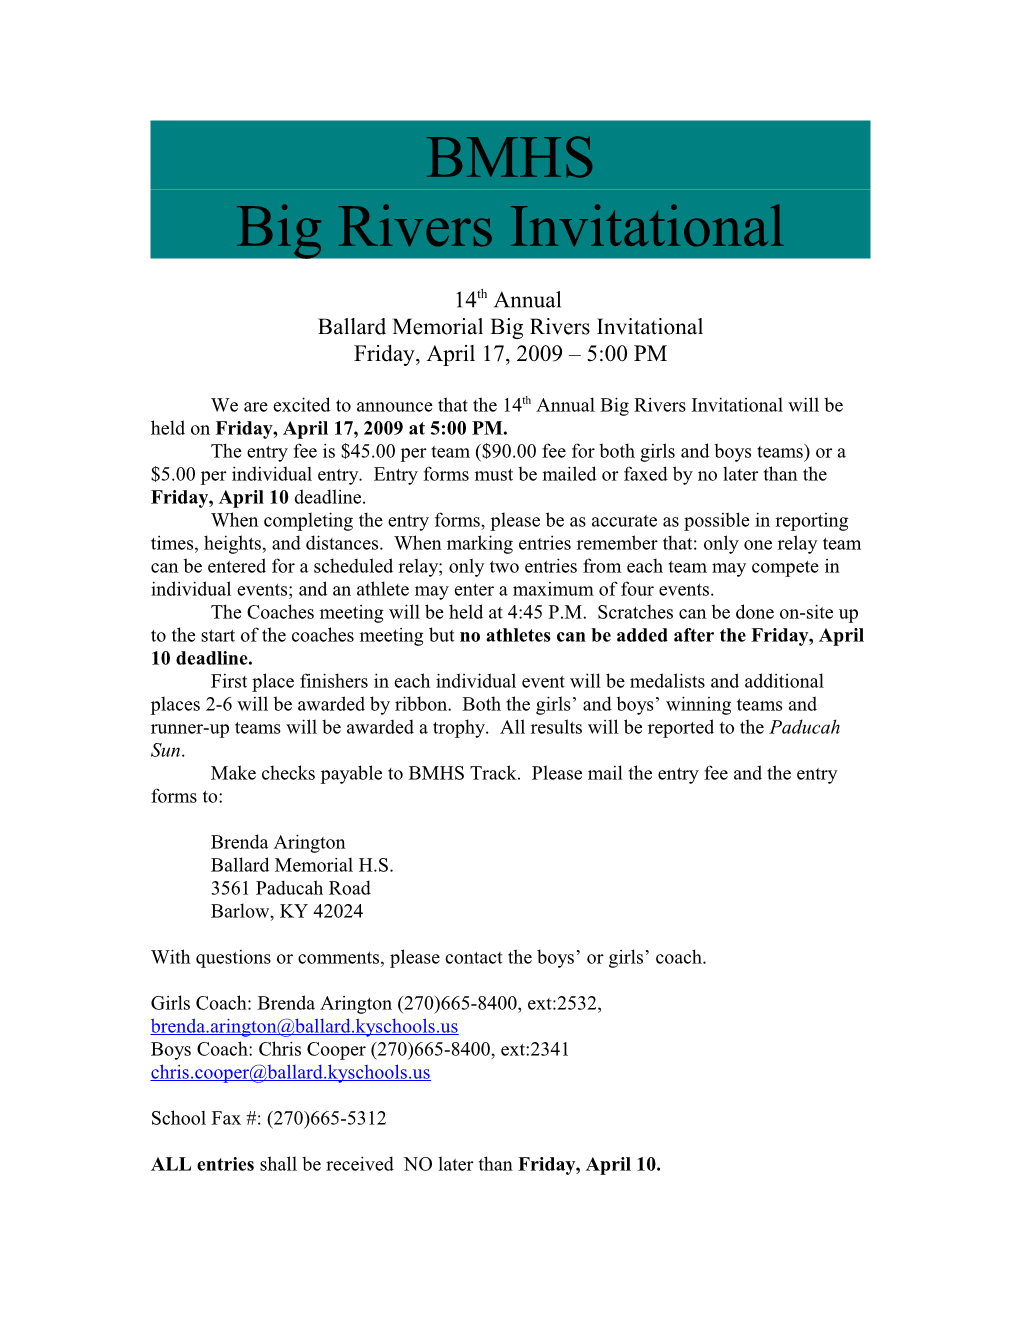 Ballard Memorial Big Rivers Invitational